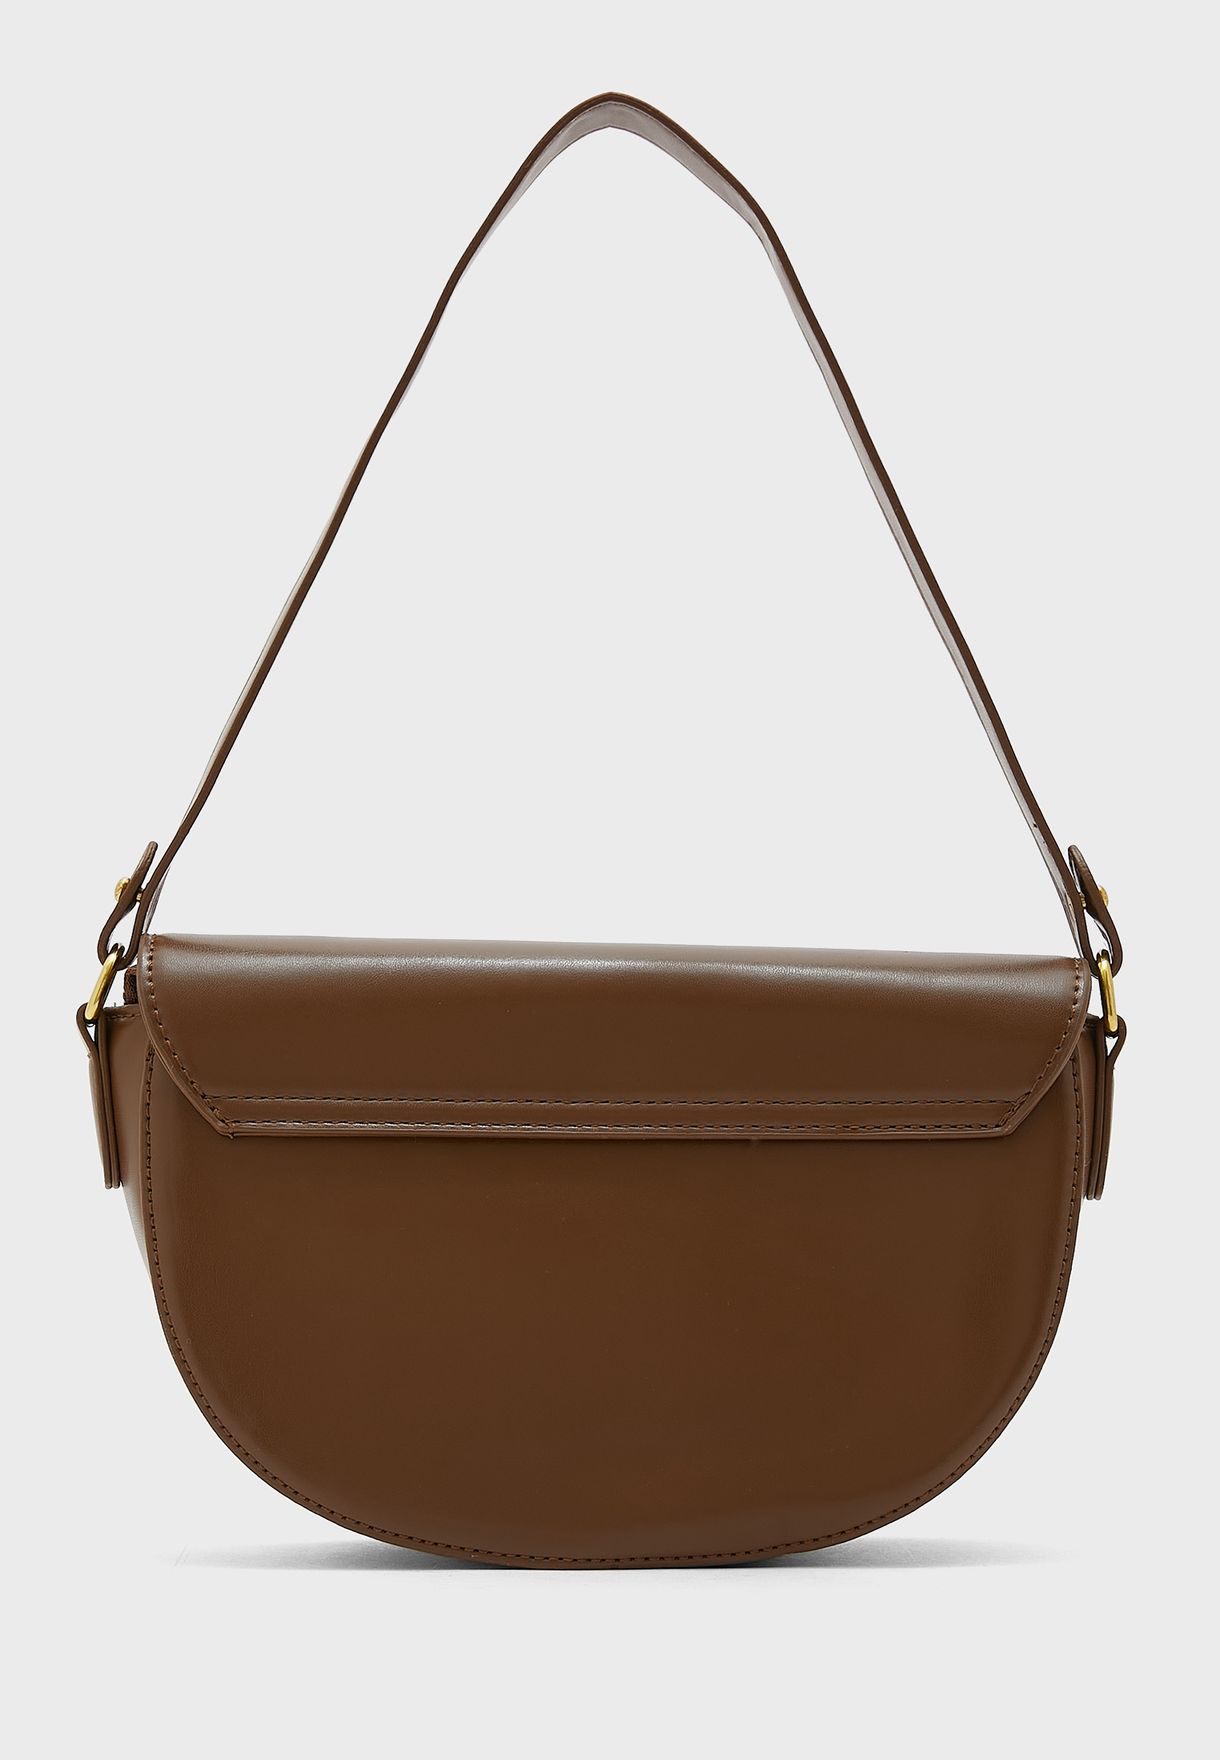 Minimal Handbag With Long And Short Straps